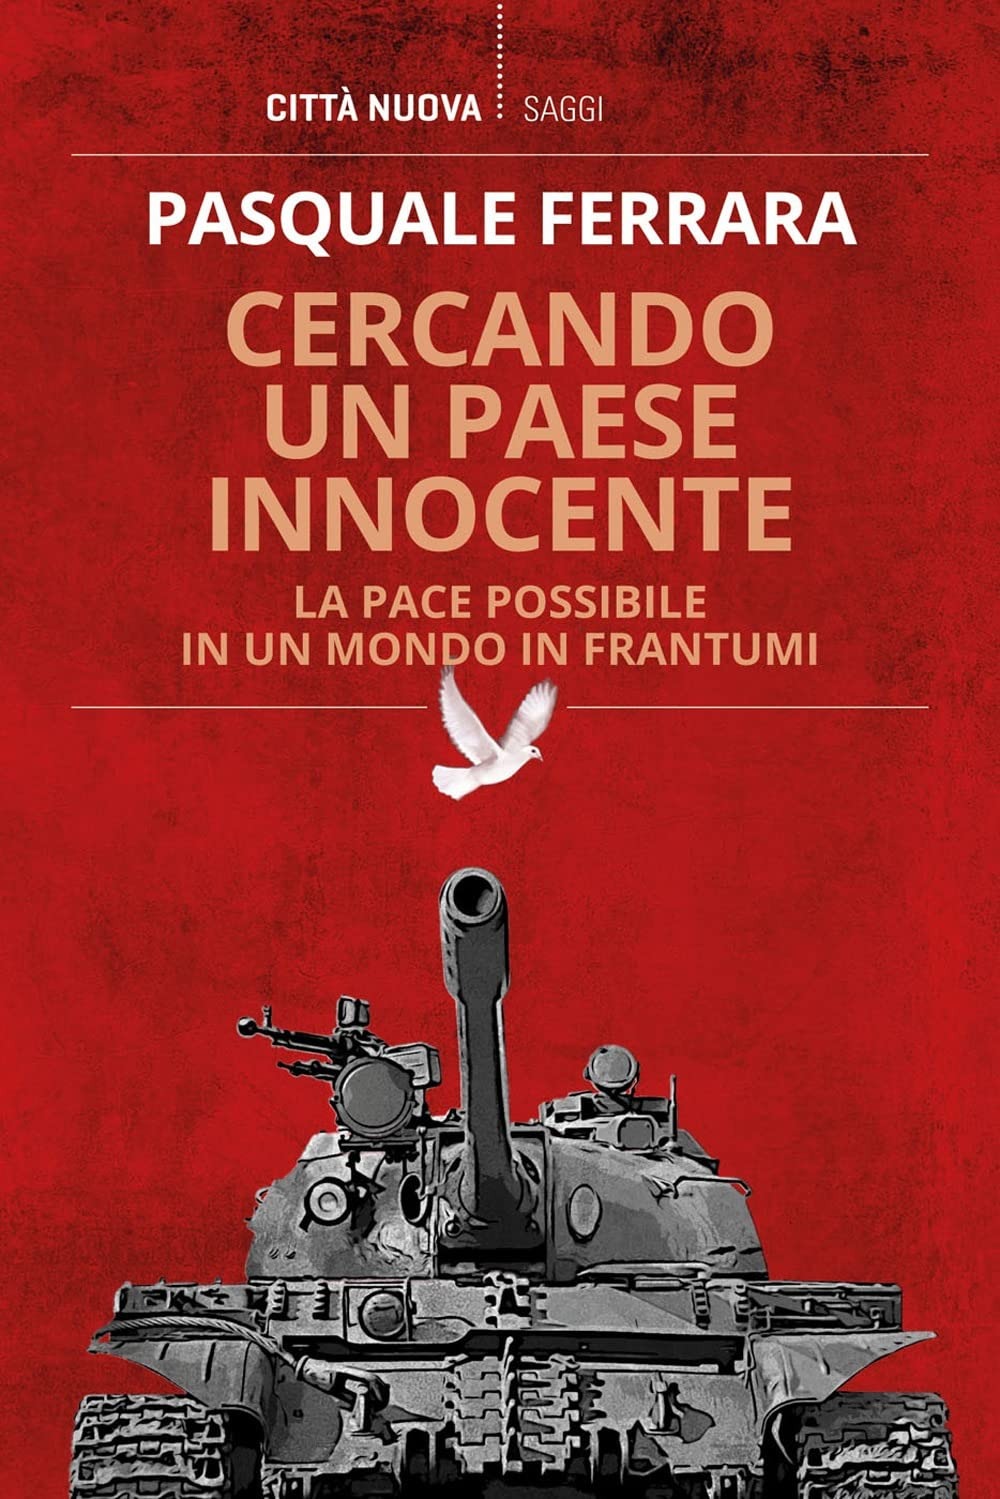 Carro Armato che spara d una colomba, copertina del volume "Cercando un Paese innocente"